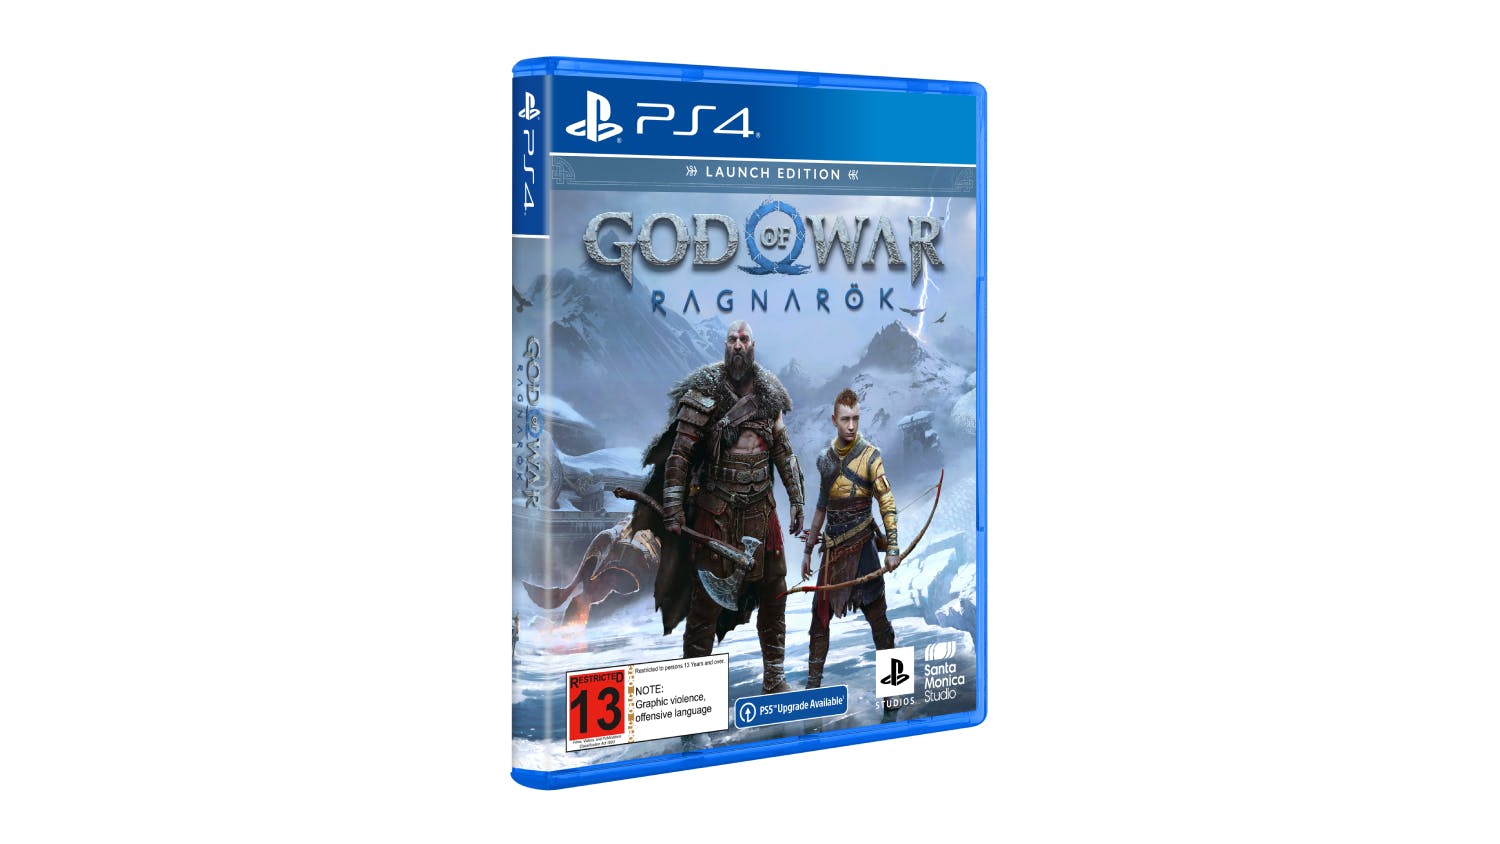  God of War Ragnarök - PlayStation 4 : Solutions 2 Go